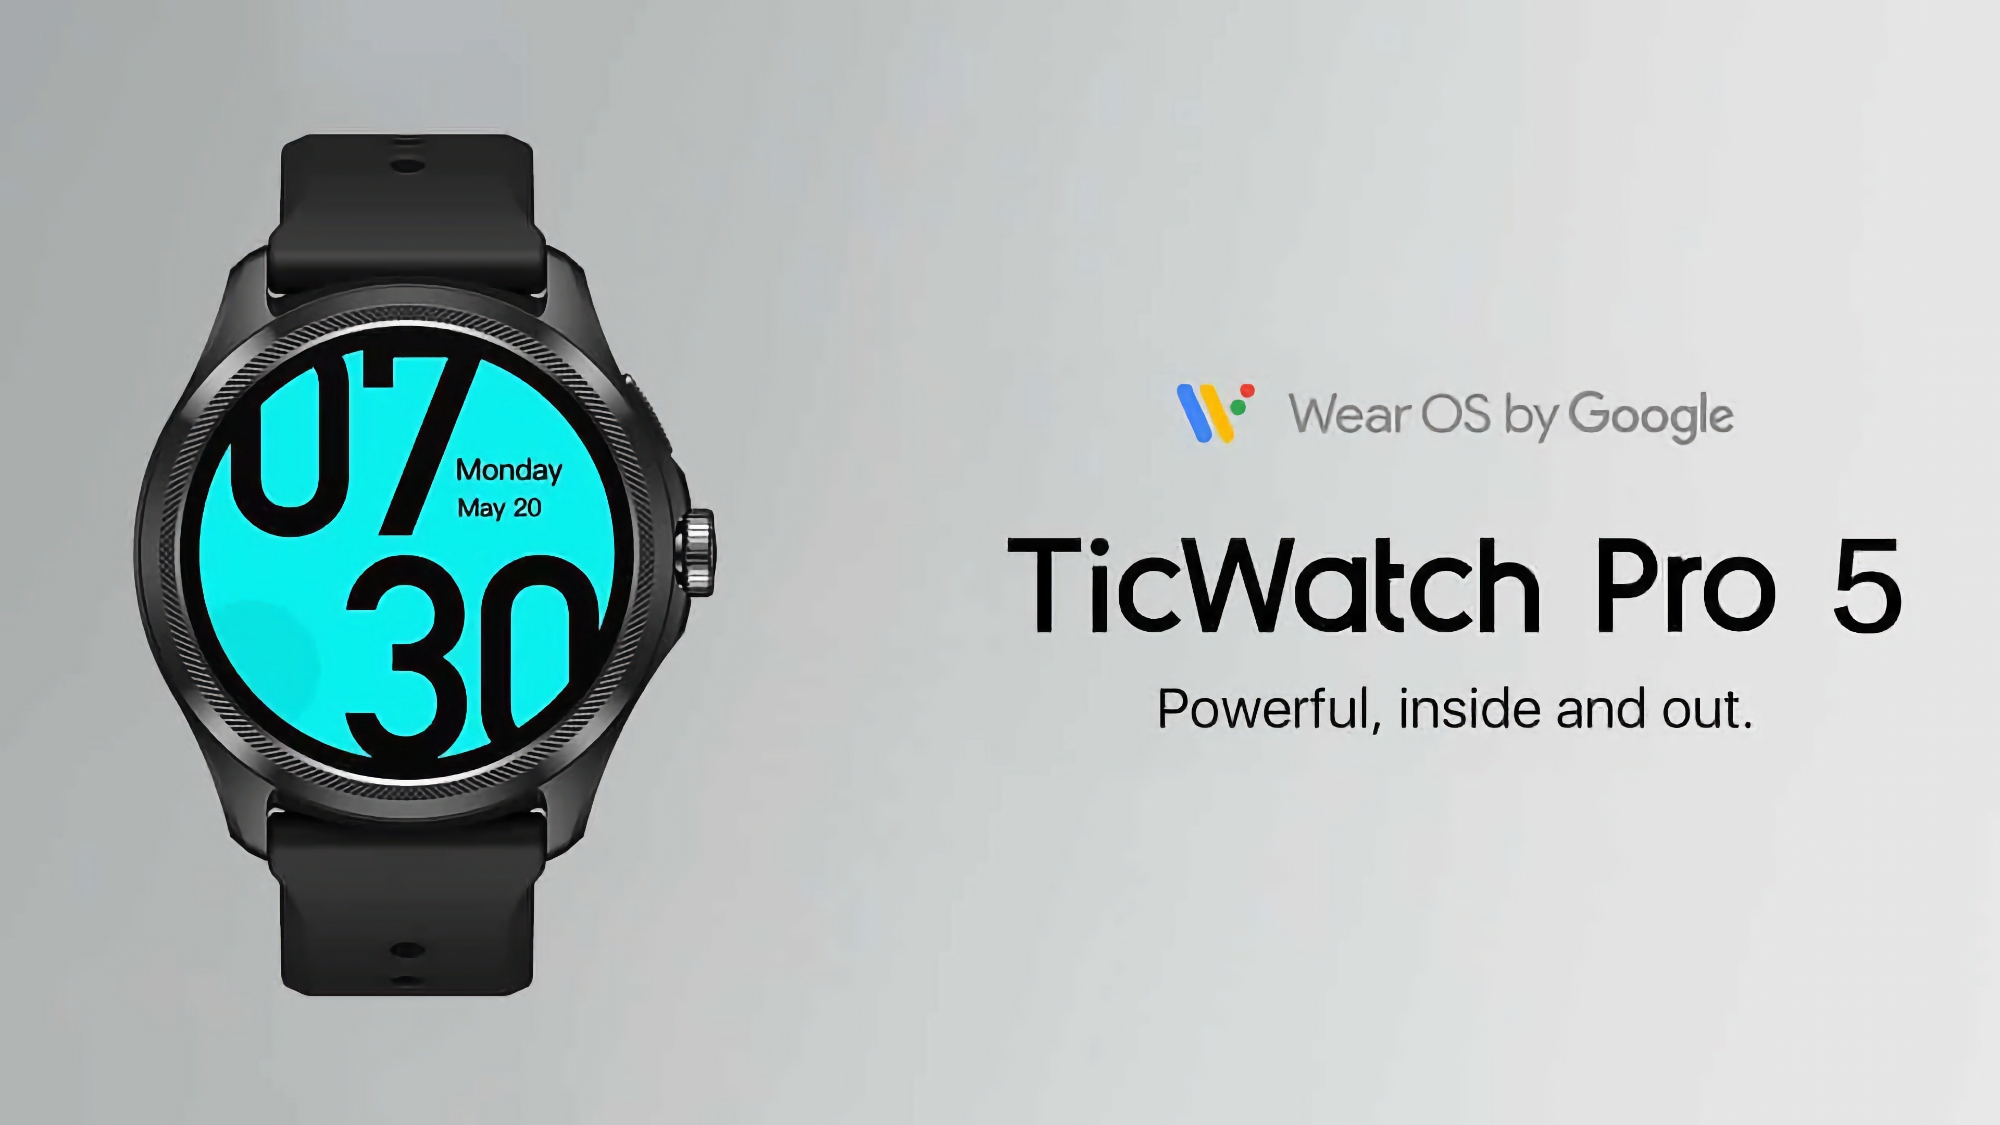 TicWatch Pro 5 auf Amazon: Dual-Screen-Smartwatch mit Snapdragon W5+ Gen 1-Chip und bis zu 45 Tagen Akkulaufzeit für 54 Euro Rabatt